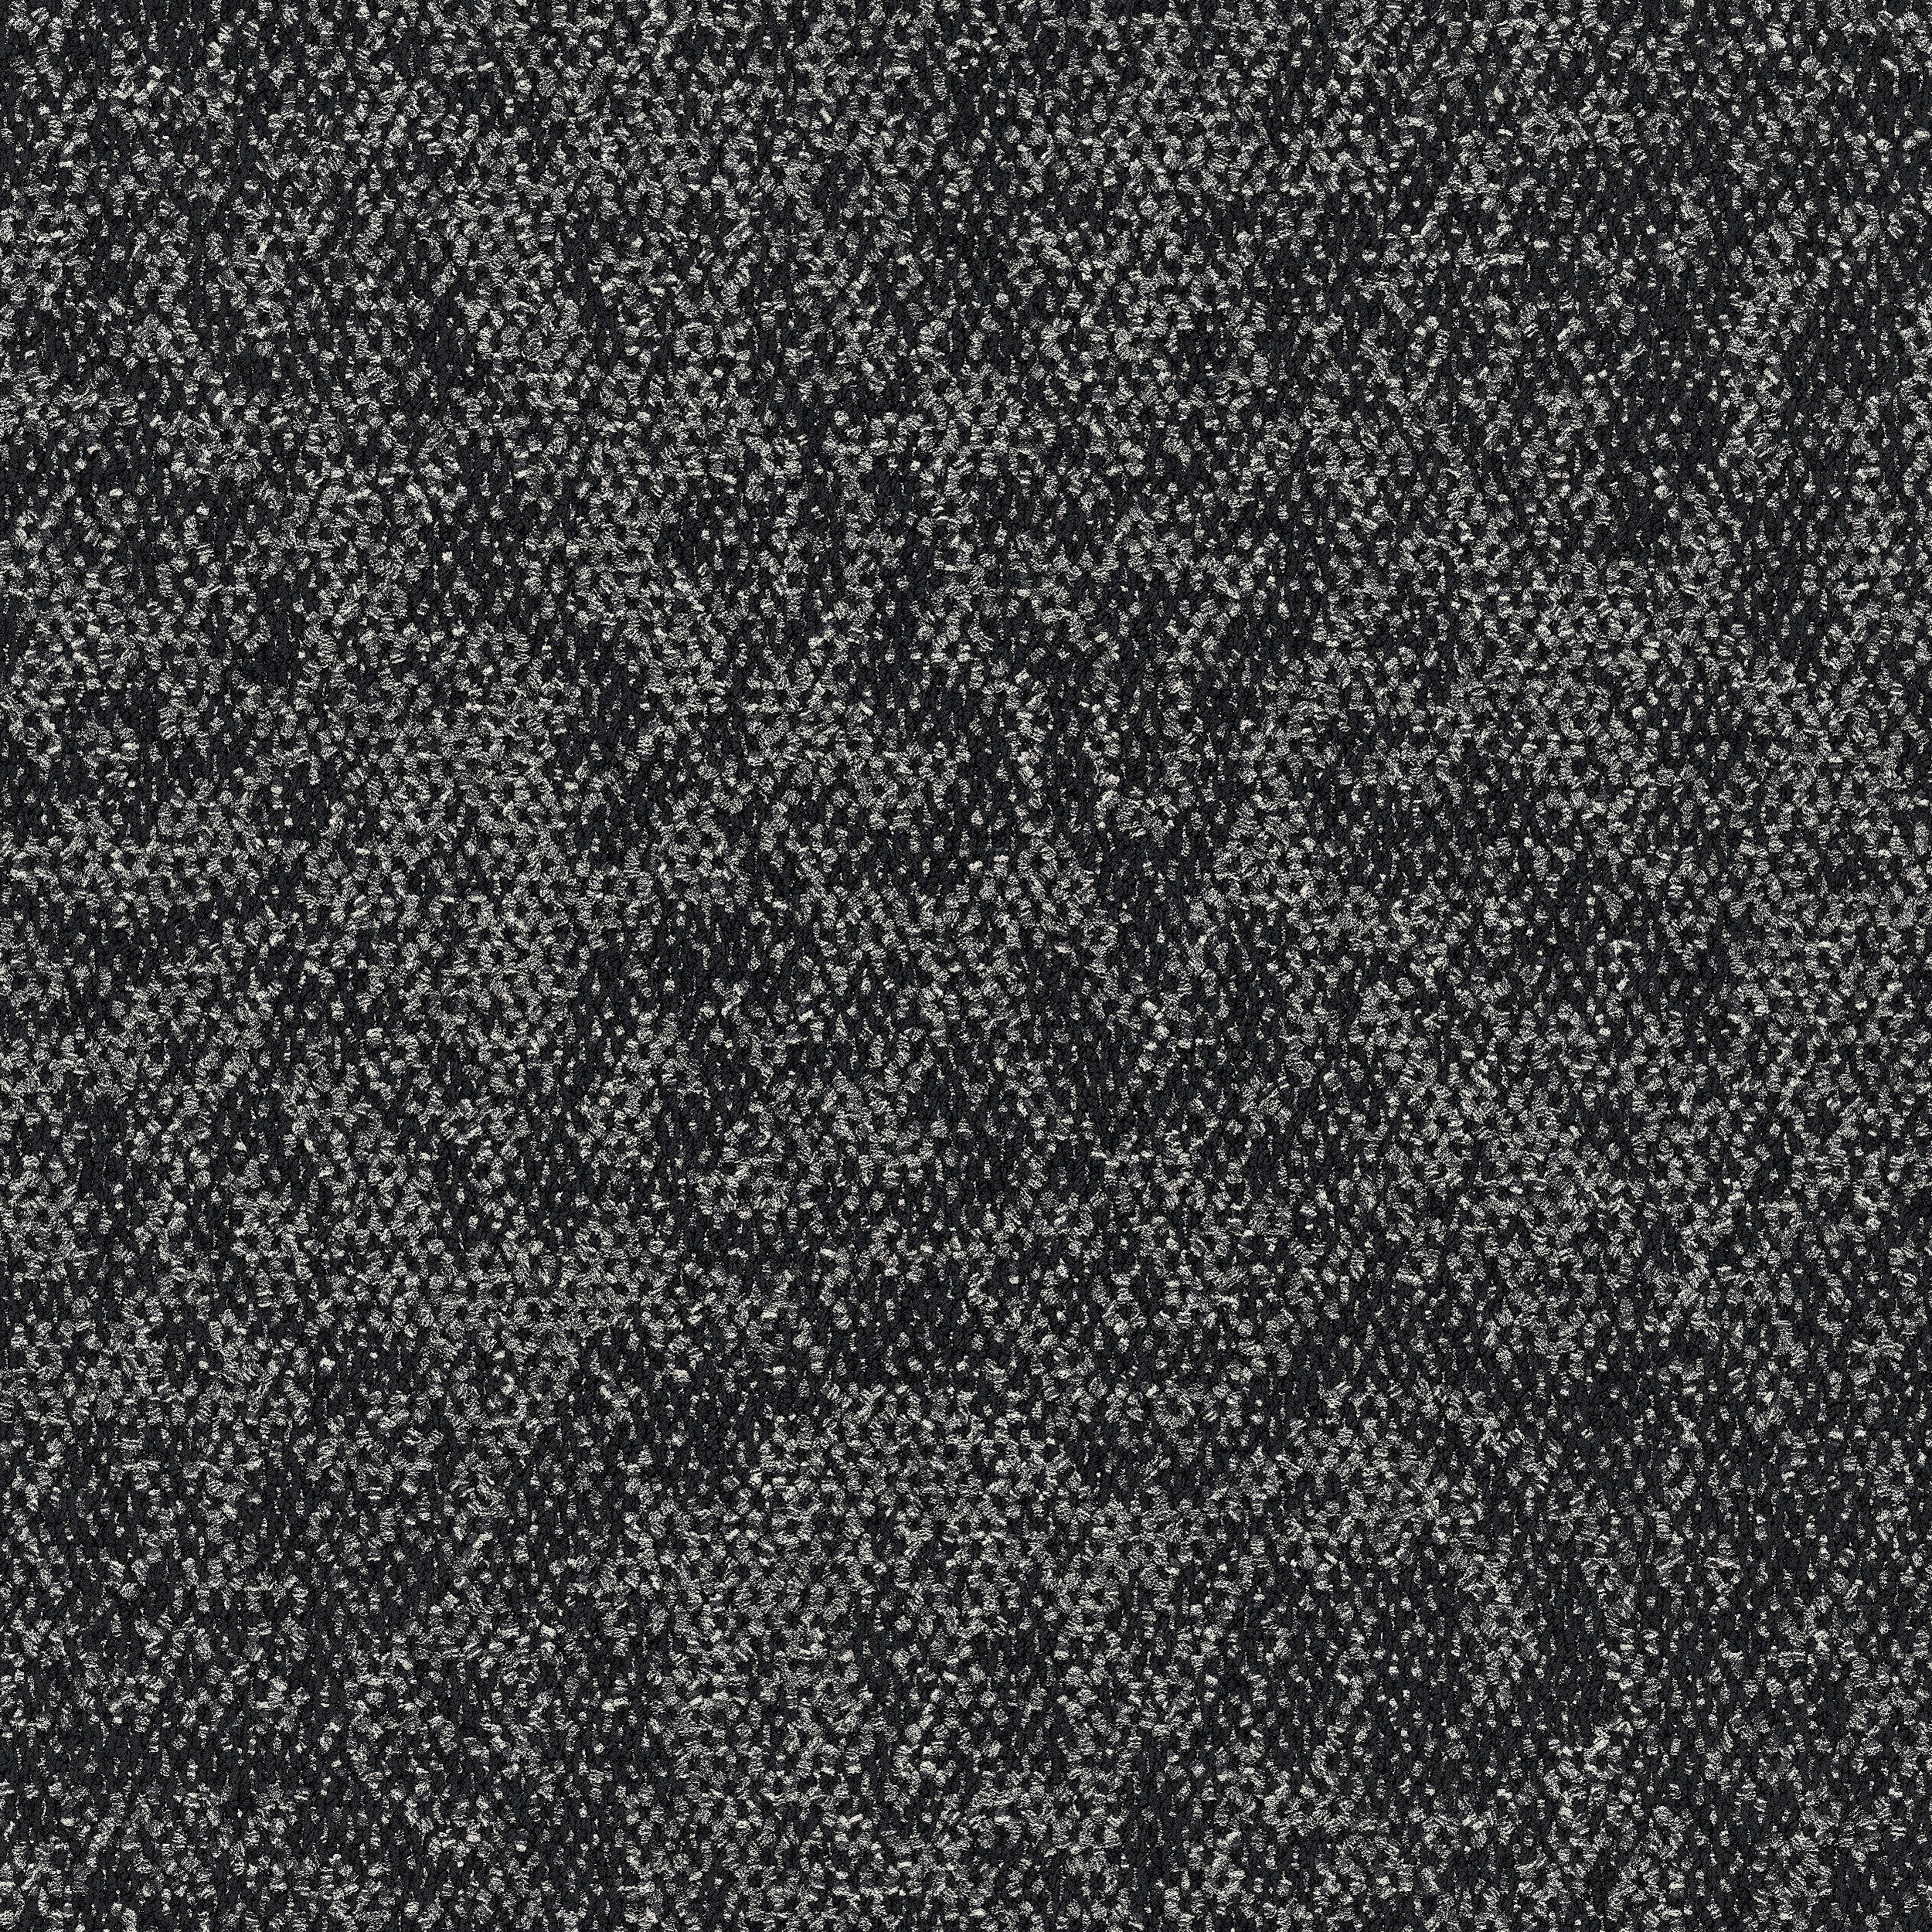 Open Air 405 Carpet Tile In Black afbeeldingnummer 7